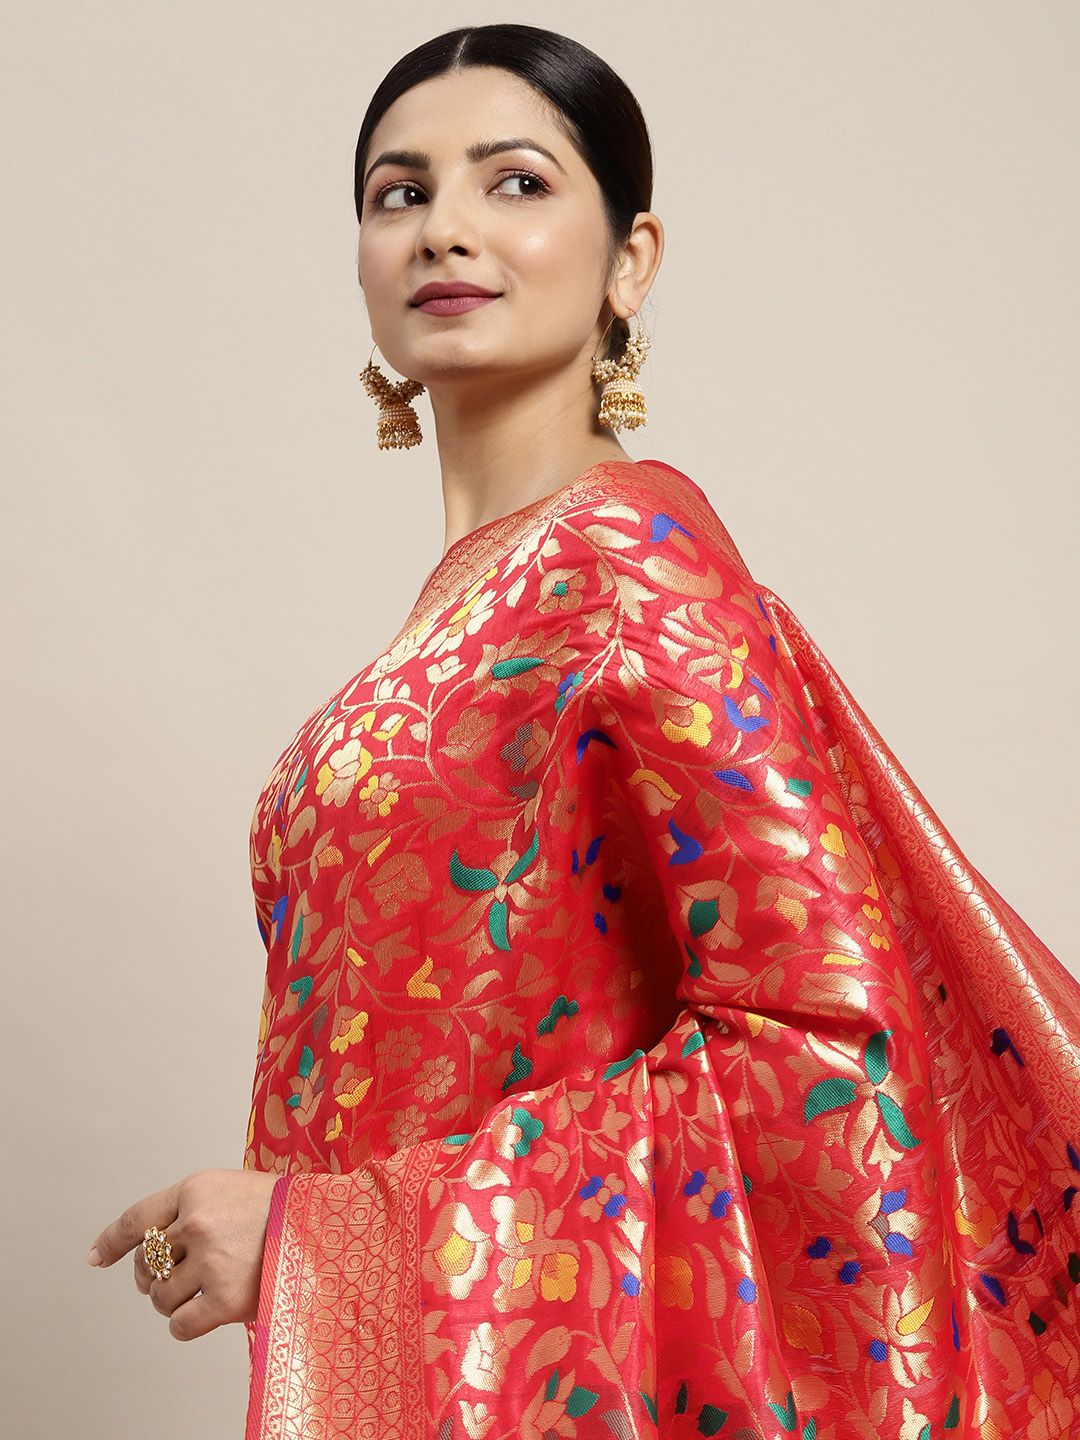 Saree mall Red & Gold-Toned Floral Zari Silk Blend Banarasi Sarees Price in India